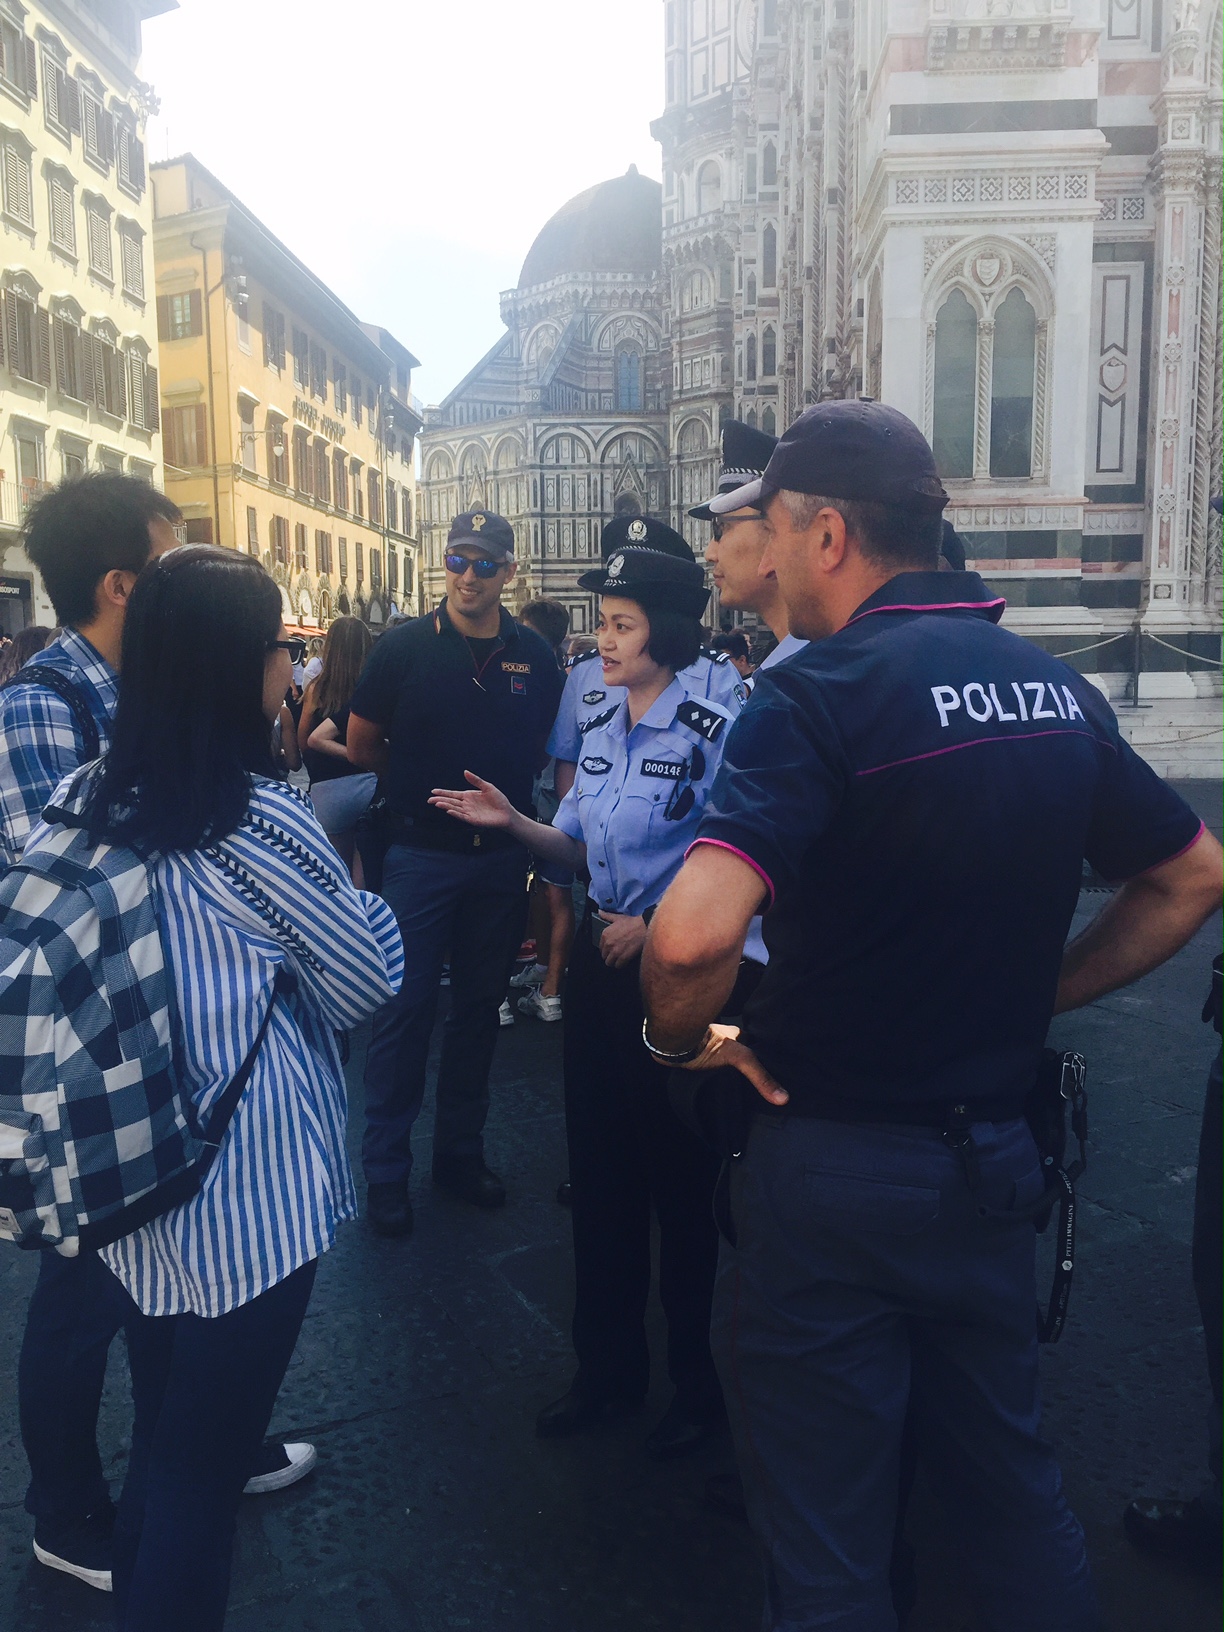 Le pattuglie miste in azione in piazza Duomo a Firenze